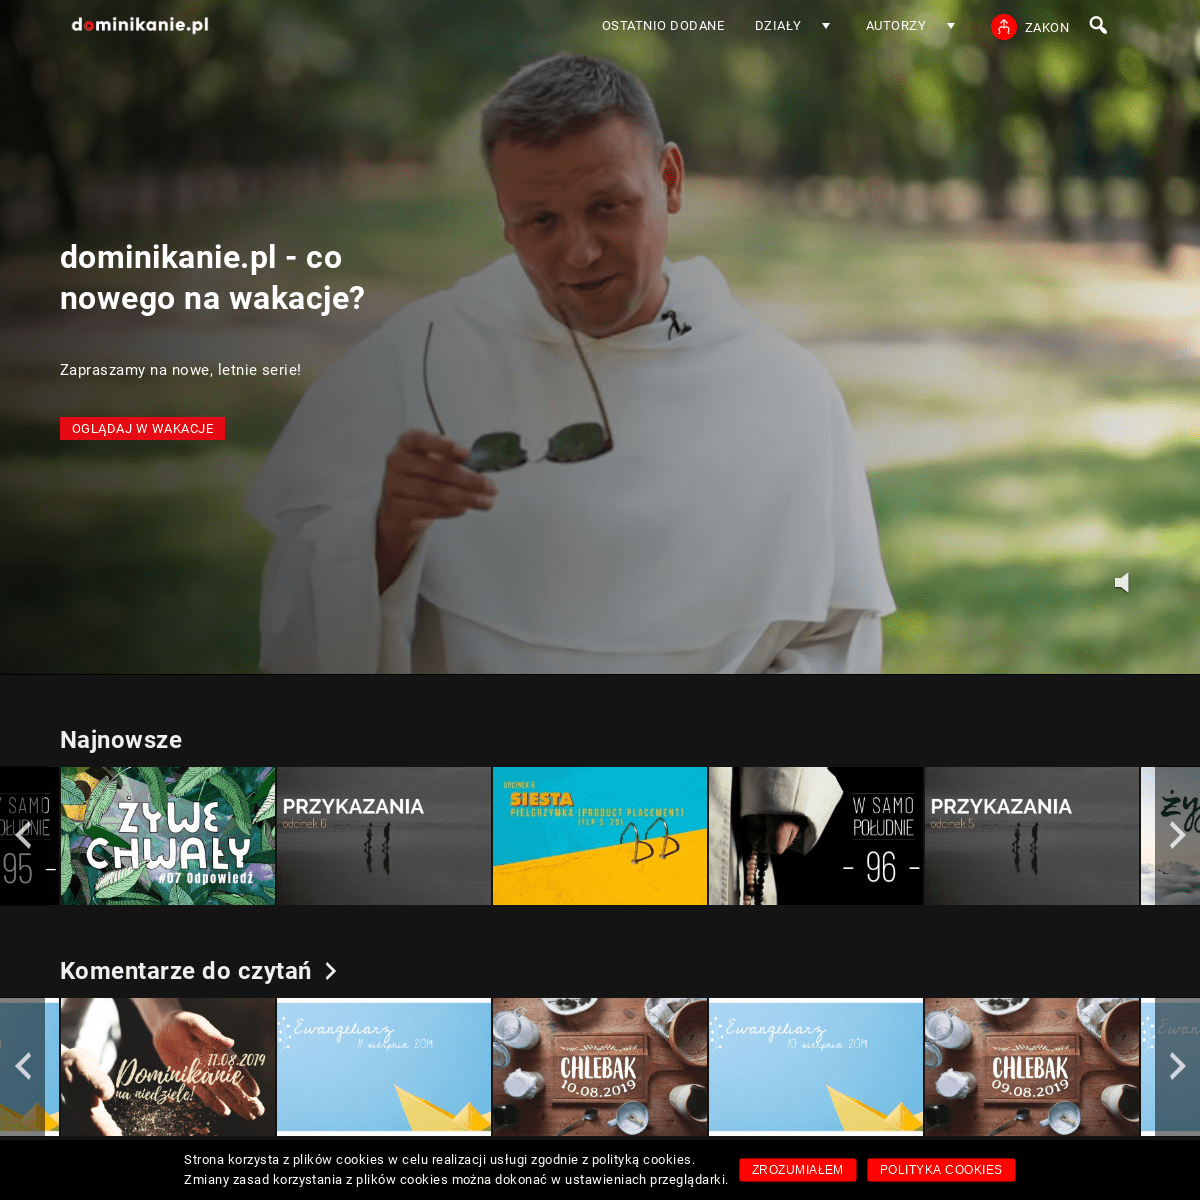 dominikanie.pl – Dominikanie.pl – katolicka platforma wideo z dedykowanymi materiałami o tematyce liturgicznej, teologicznej, ku